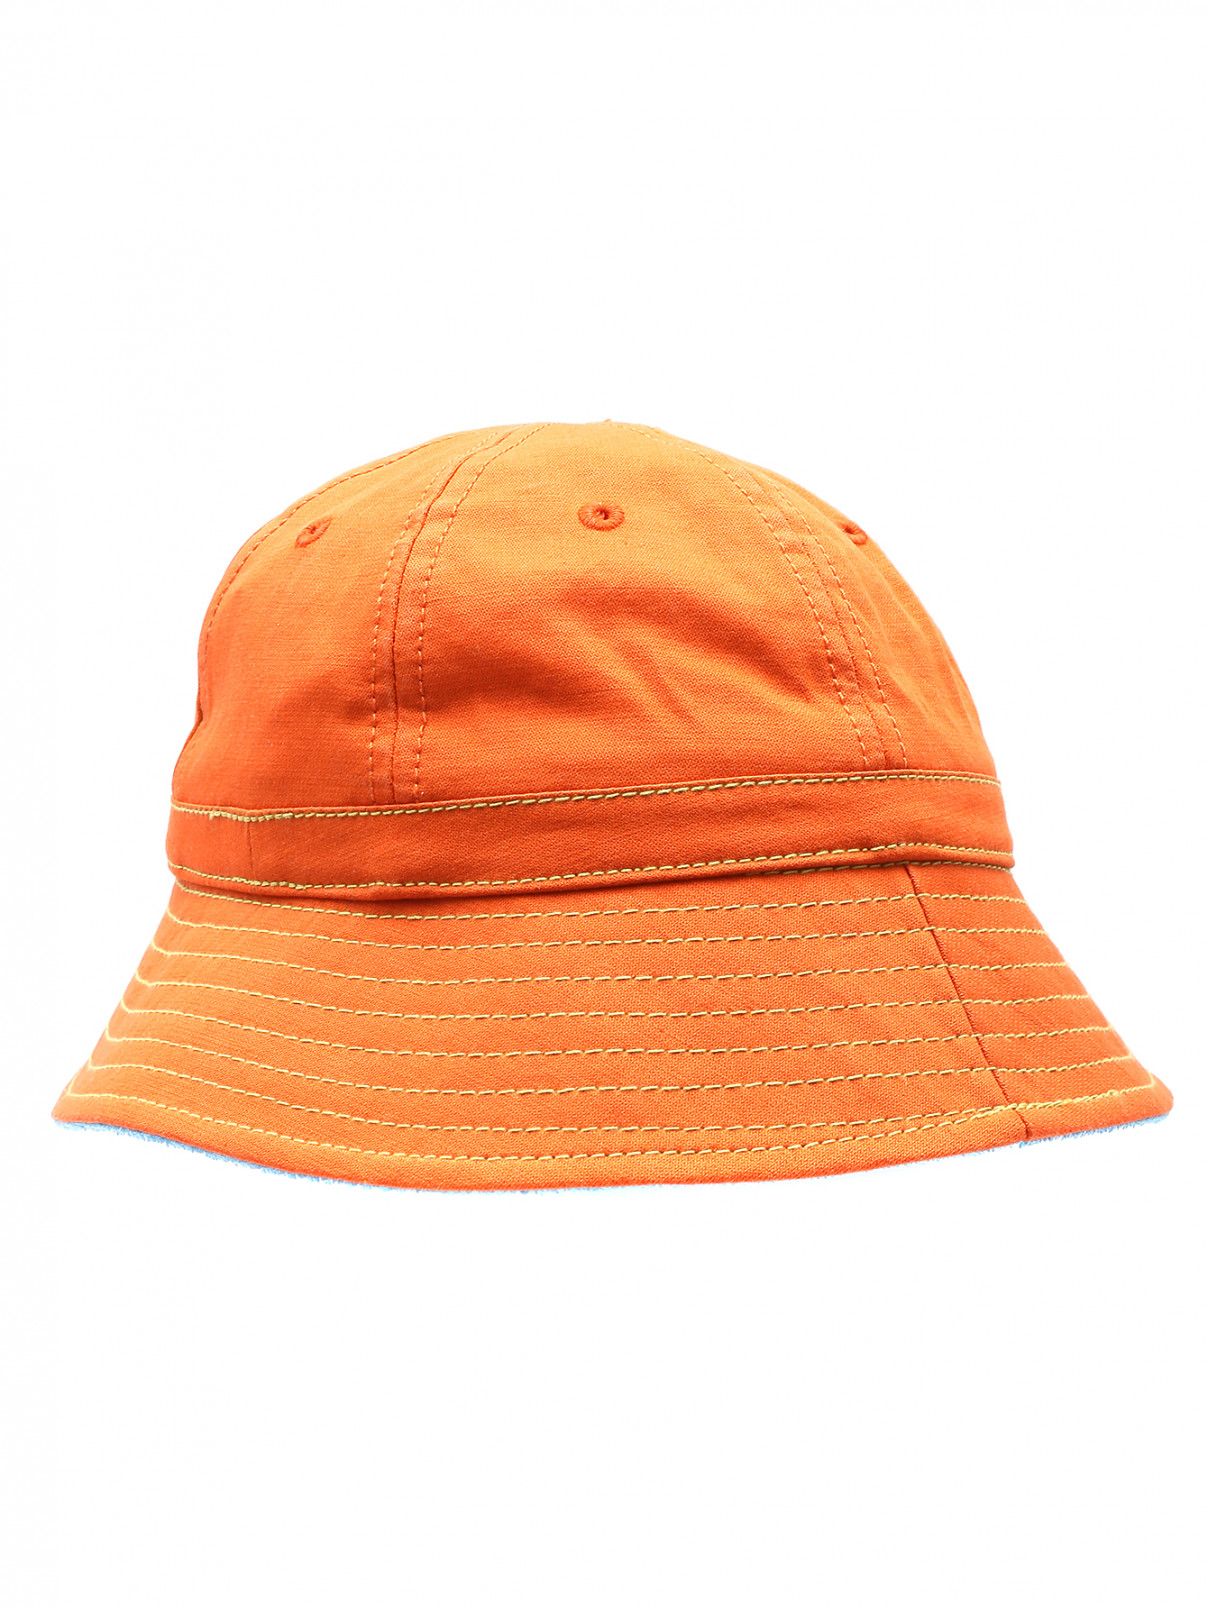 Панама из хлопка и льна с вышивкой Stetson  –  Общий вид  – Цвет:  Оранжевый